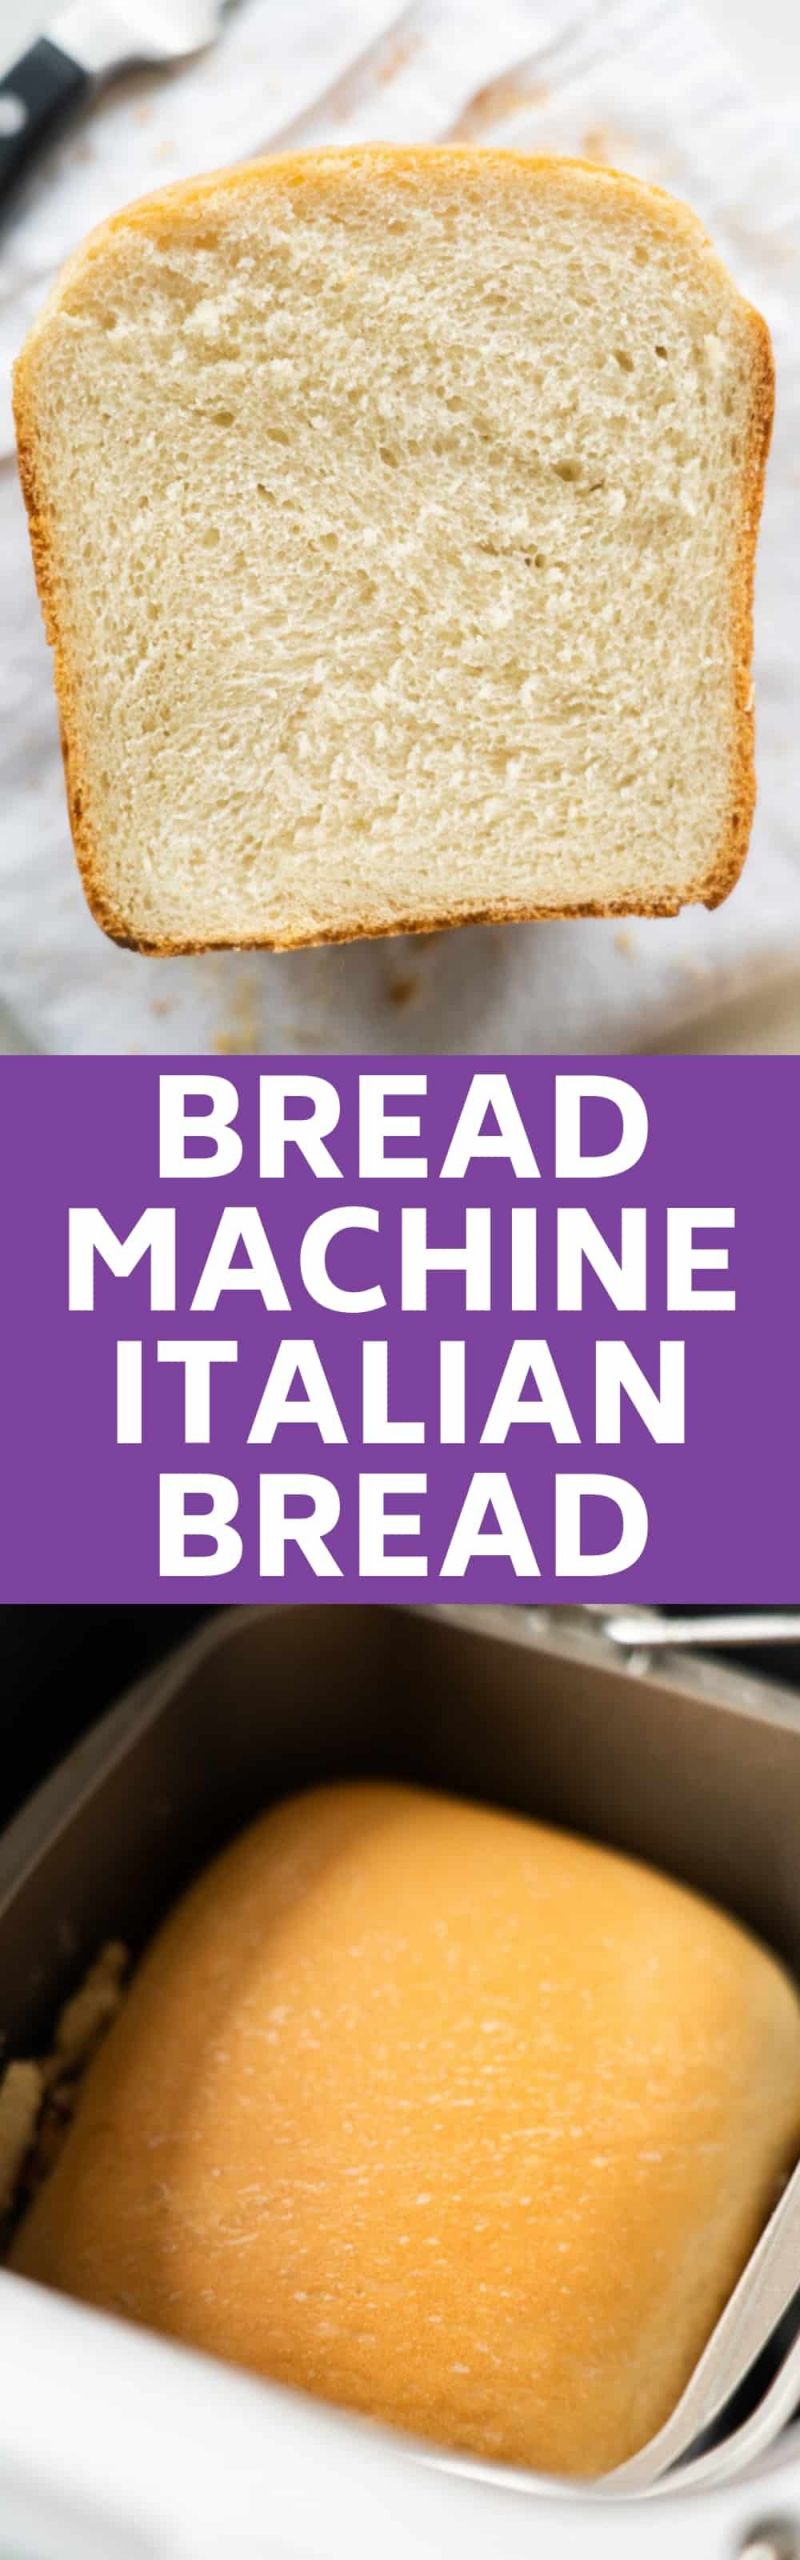 Italian Bread Bread Machine
 Bread Machine Italian Bread Easy Homemade Bread Recipe